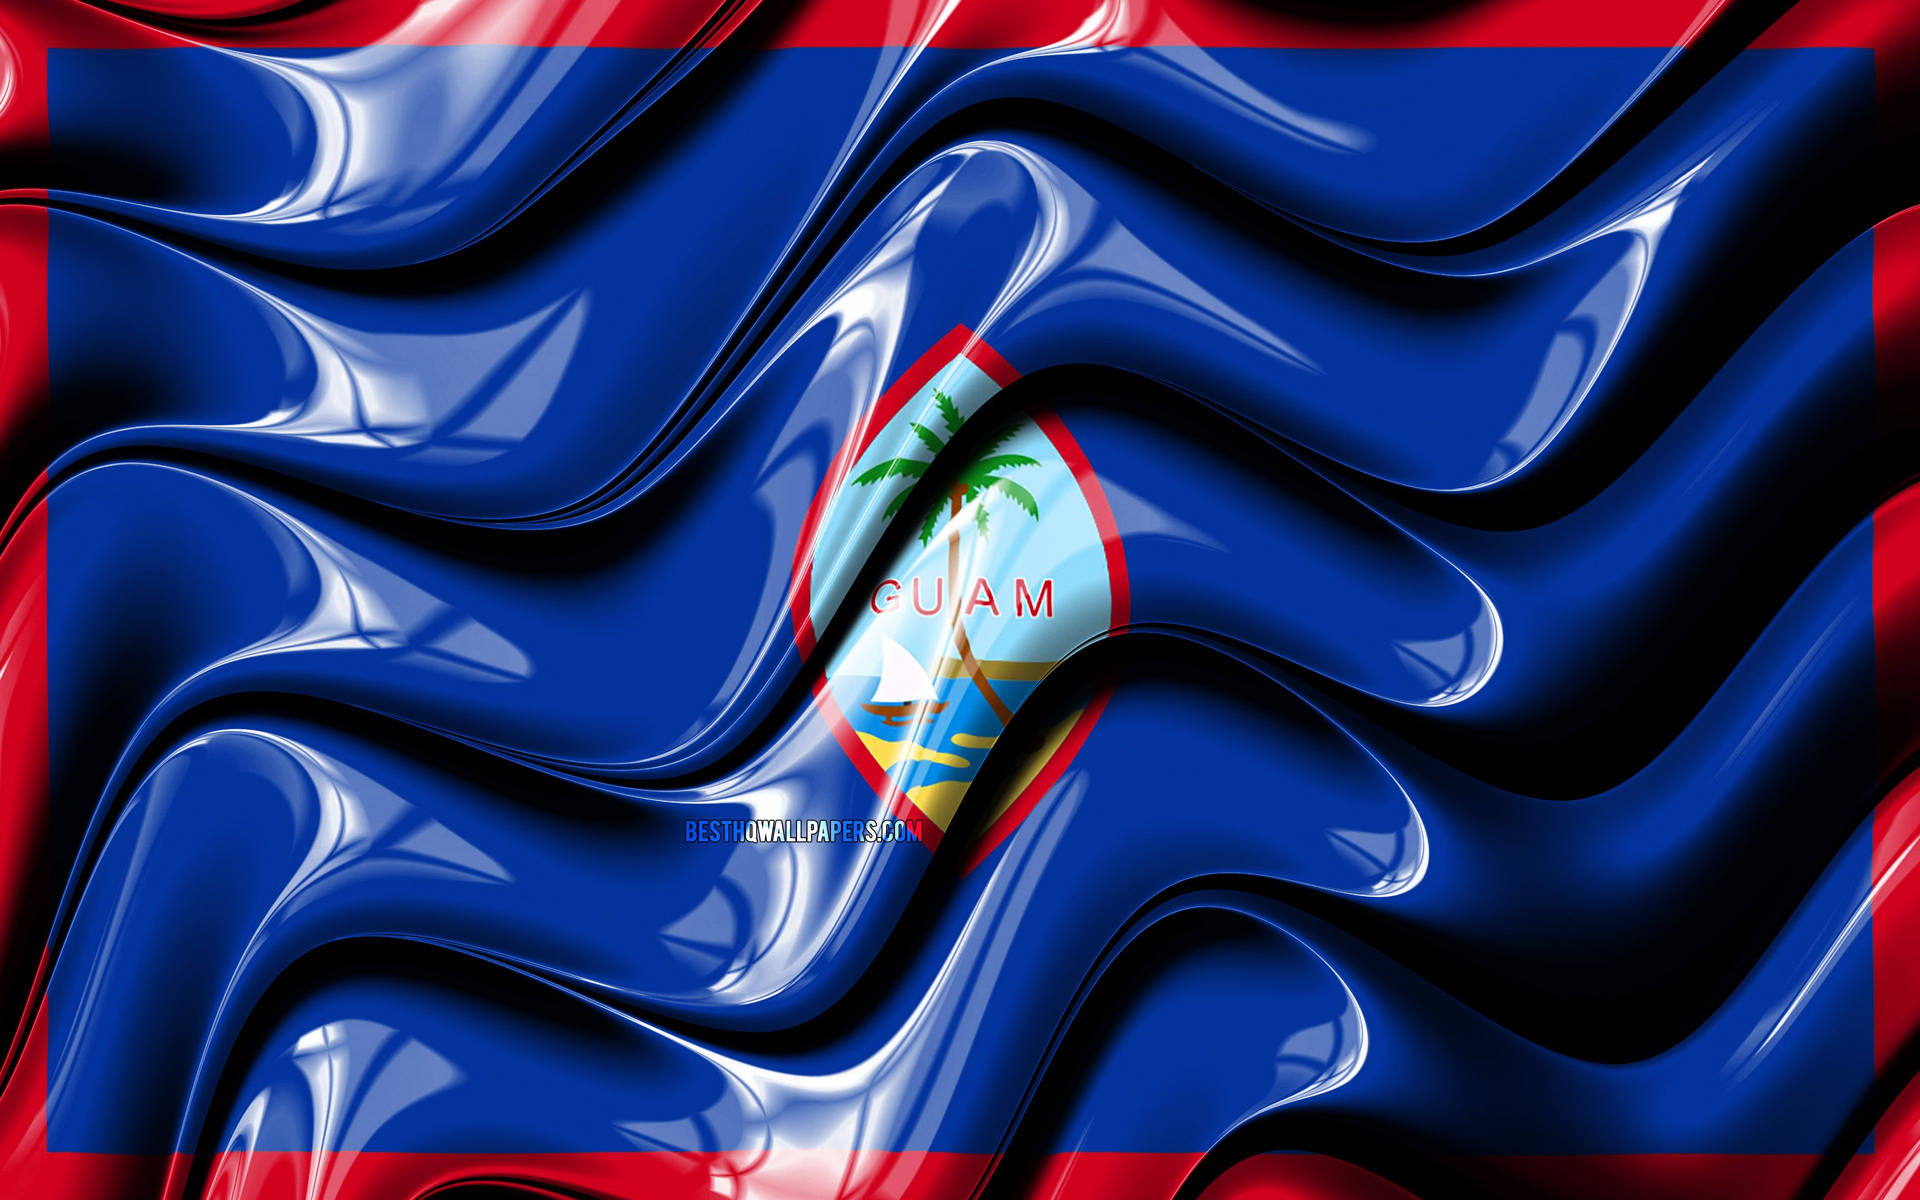 Banderade Guam Con Ondas Fondo de pantalla